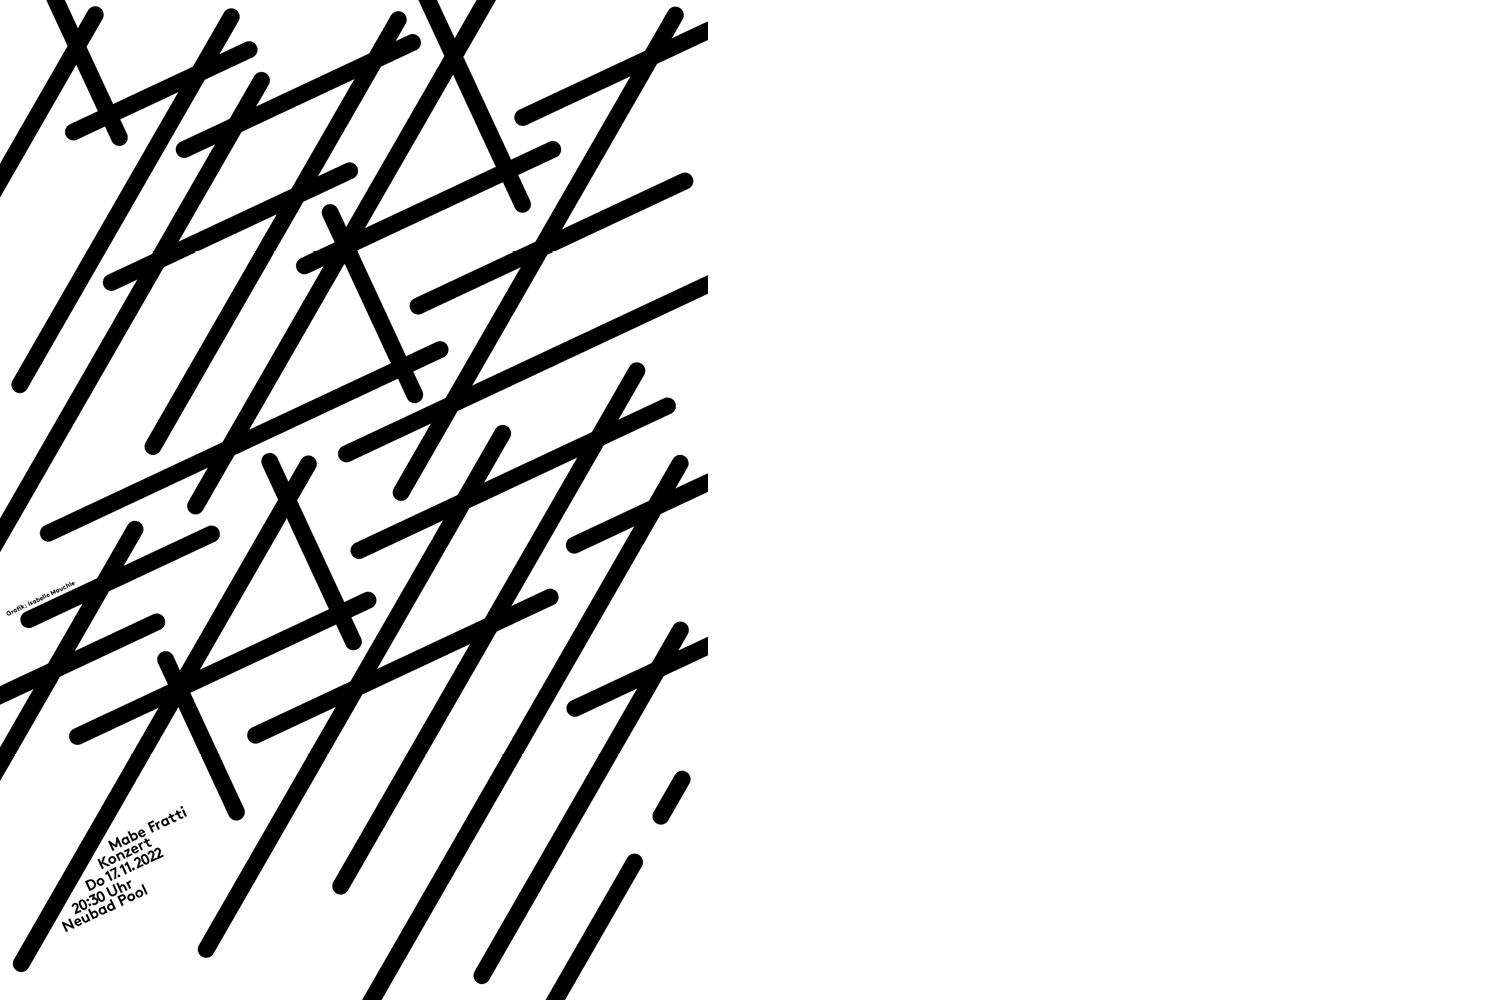 Schwarz-weiss Plakat in abstrakter Schriftform, welche den Text "Mabe Fratti" darstellt.